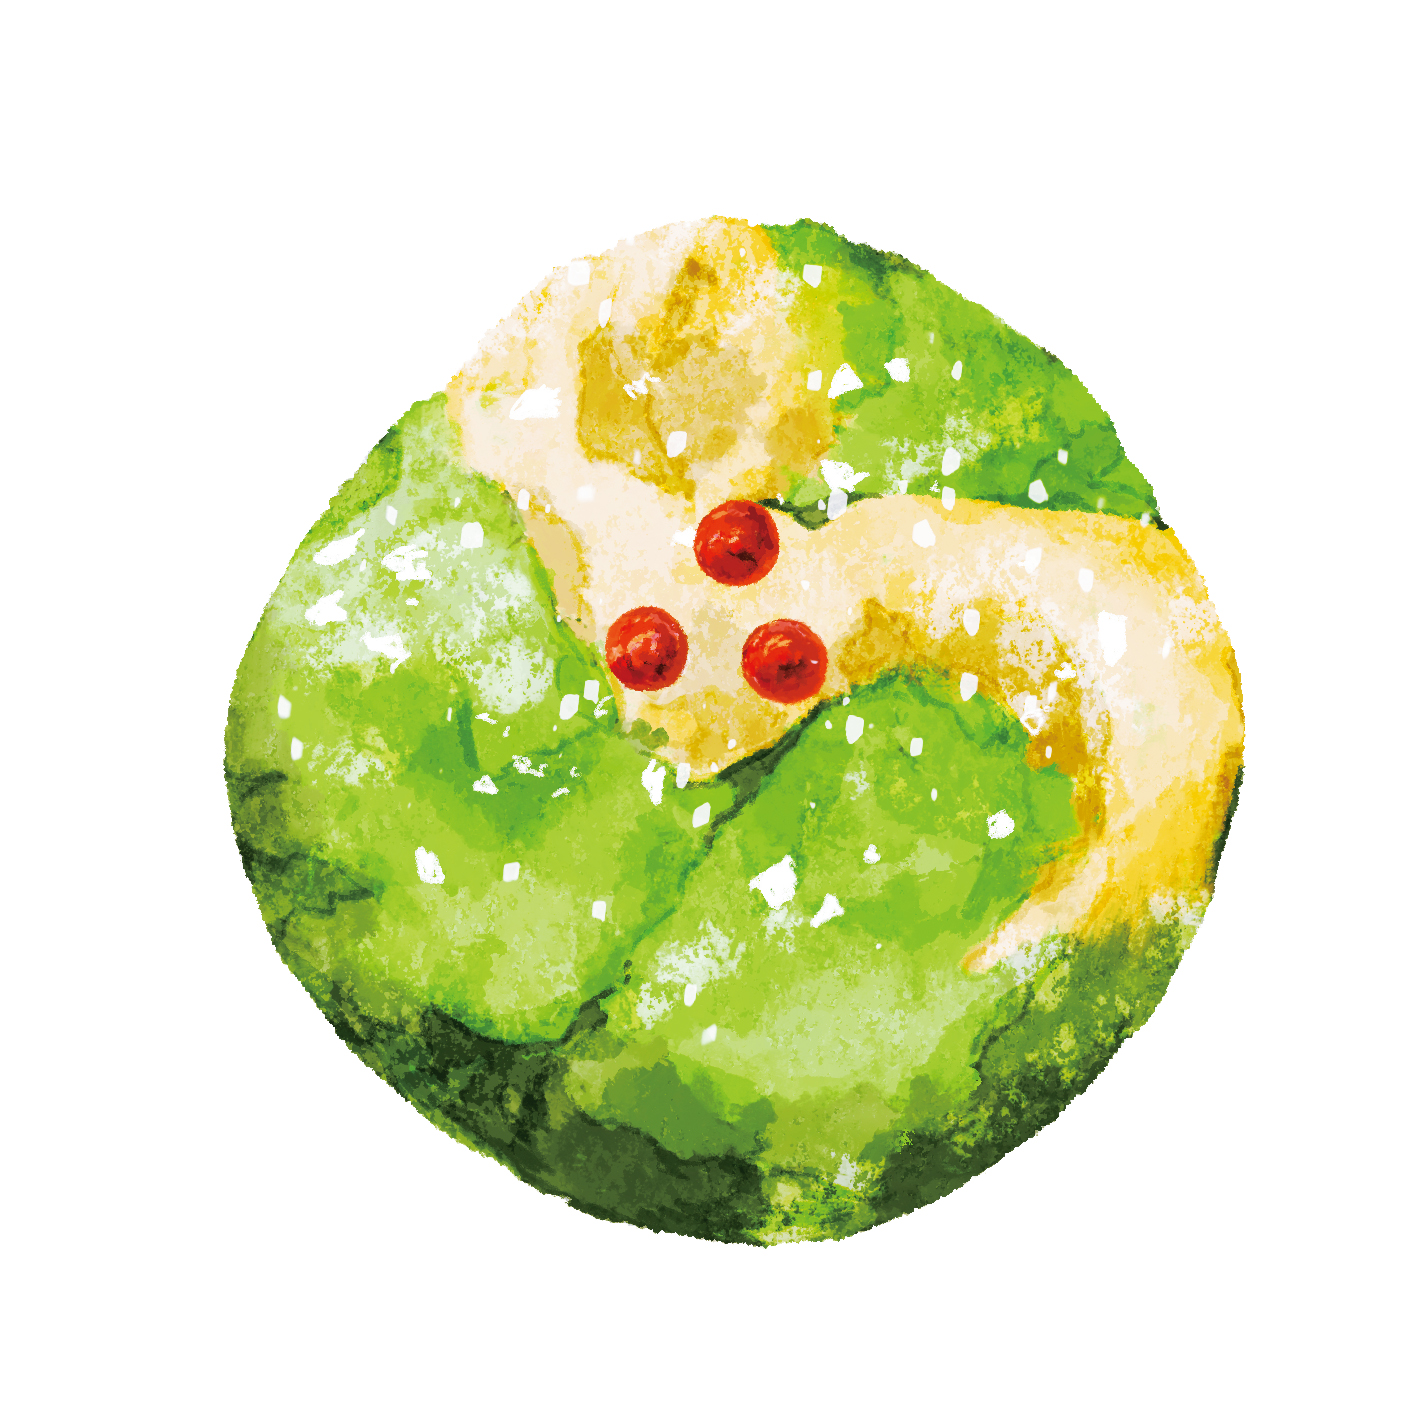 1月 藪柑子（やぶこうじ）／ねりきり
お正月の縁起物「十両という植物がモチーフ。鮮やかな緑色の葉と赤い実が、色味の少ない冬の景色に彩りを添える。ねりきりは白のこし餡をベースとし、つなぎに山の芋を使用。